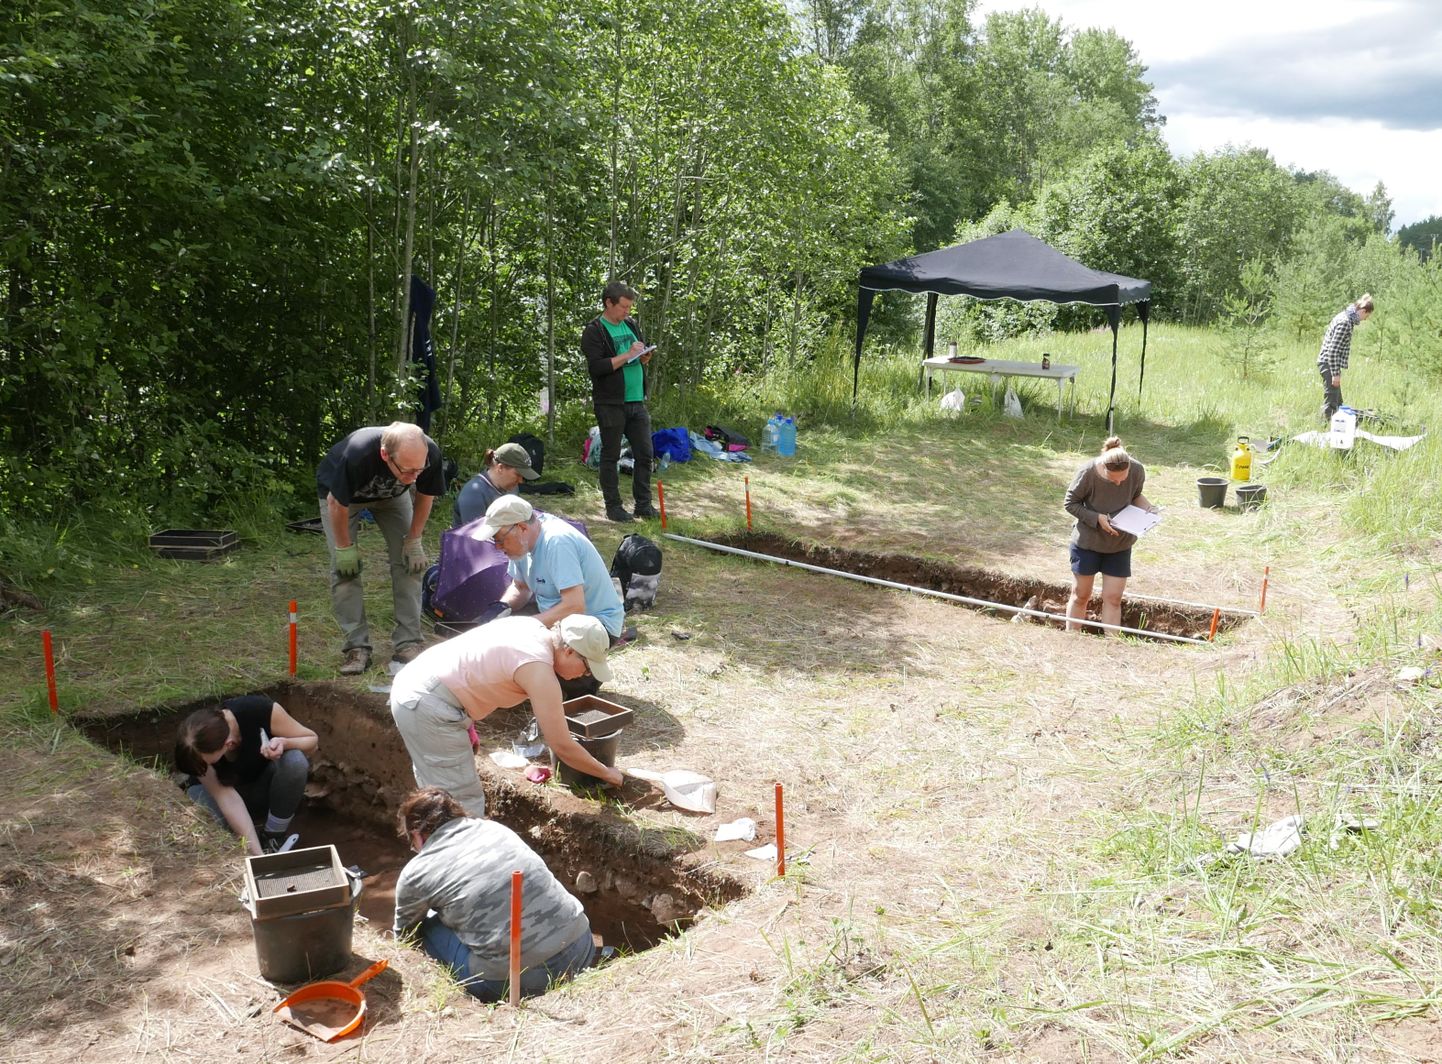 Археологические раскопки в Рийгикюла. В зеленой футболке стоит доктор Керкко Нурдквист из Хельсинкского университета, копают в основном финские археологи-любители из общества "Ango".